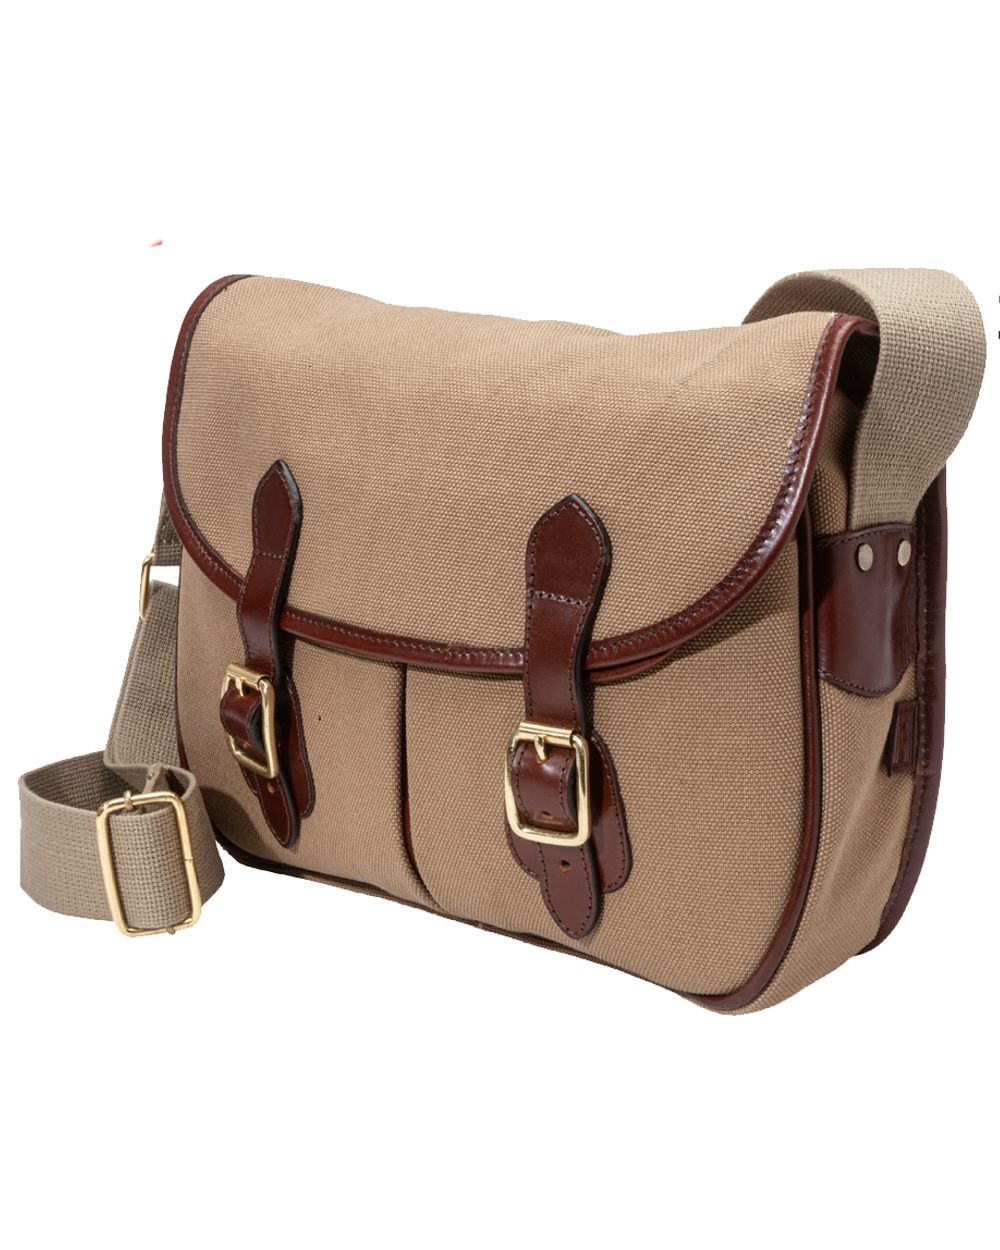 Khaki coloured Parker-Hale Romsey Carryall Bag on white background 